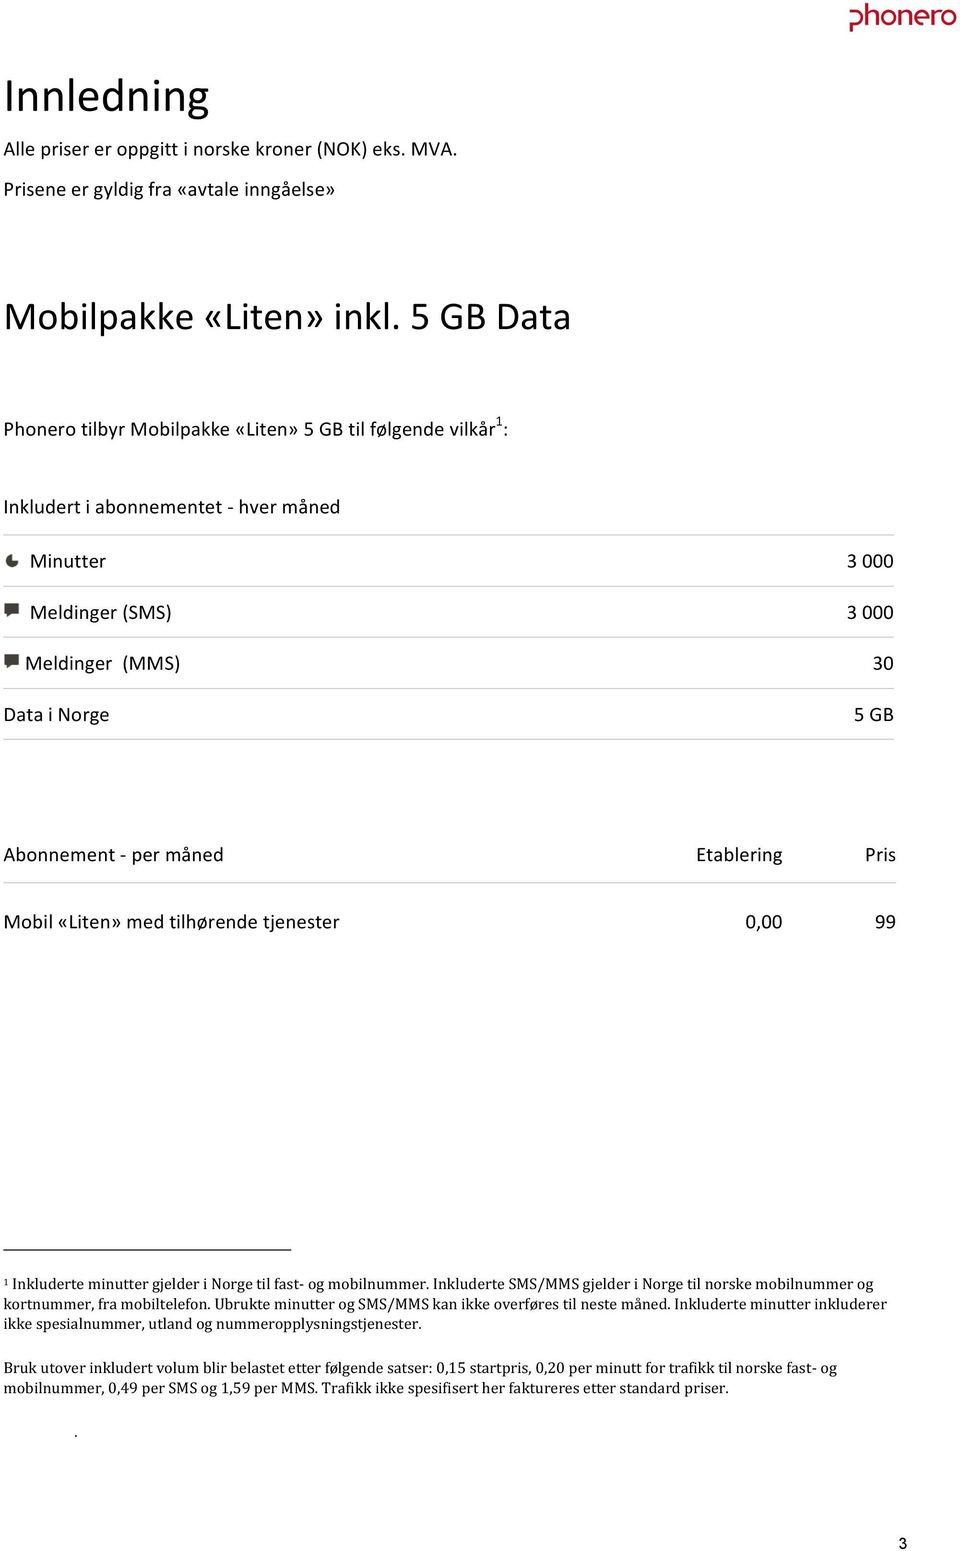 Etablering Pris Mobil «Liten» med tilhørende tjenester, 99 1 Inkluderte minutter gjelder i Norge til fast- og mobilnummer.